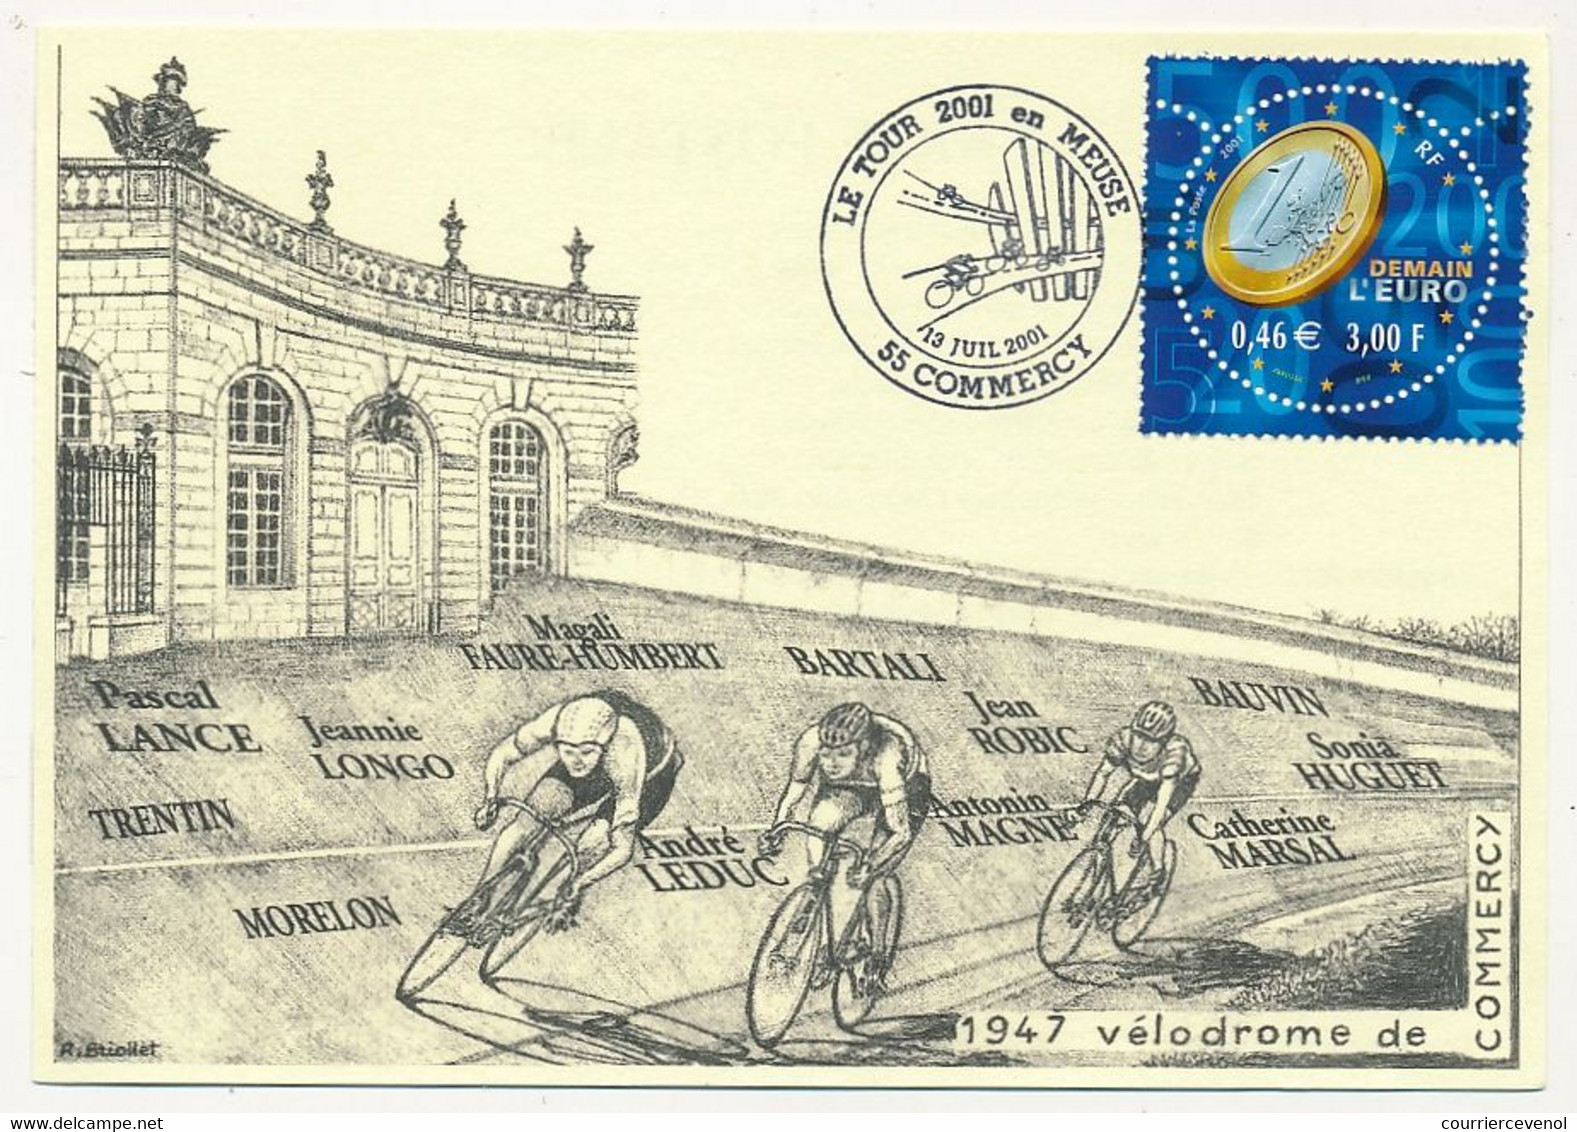 FRANCE - CPM Commémorative - Le Tour 2001 En Meuse - Vélodrome De Commercy 19/7/2001 - Oblit. Temporaire - Radsport